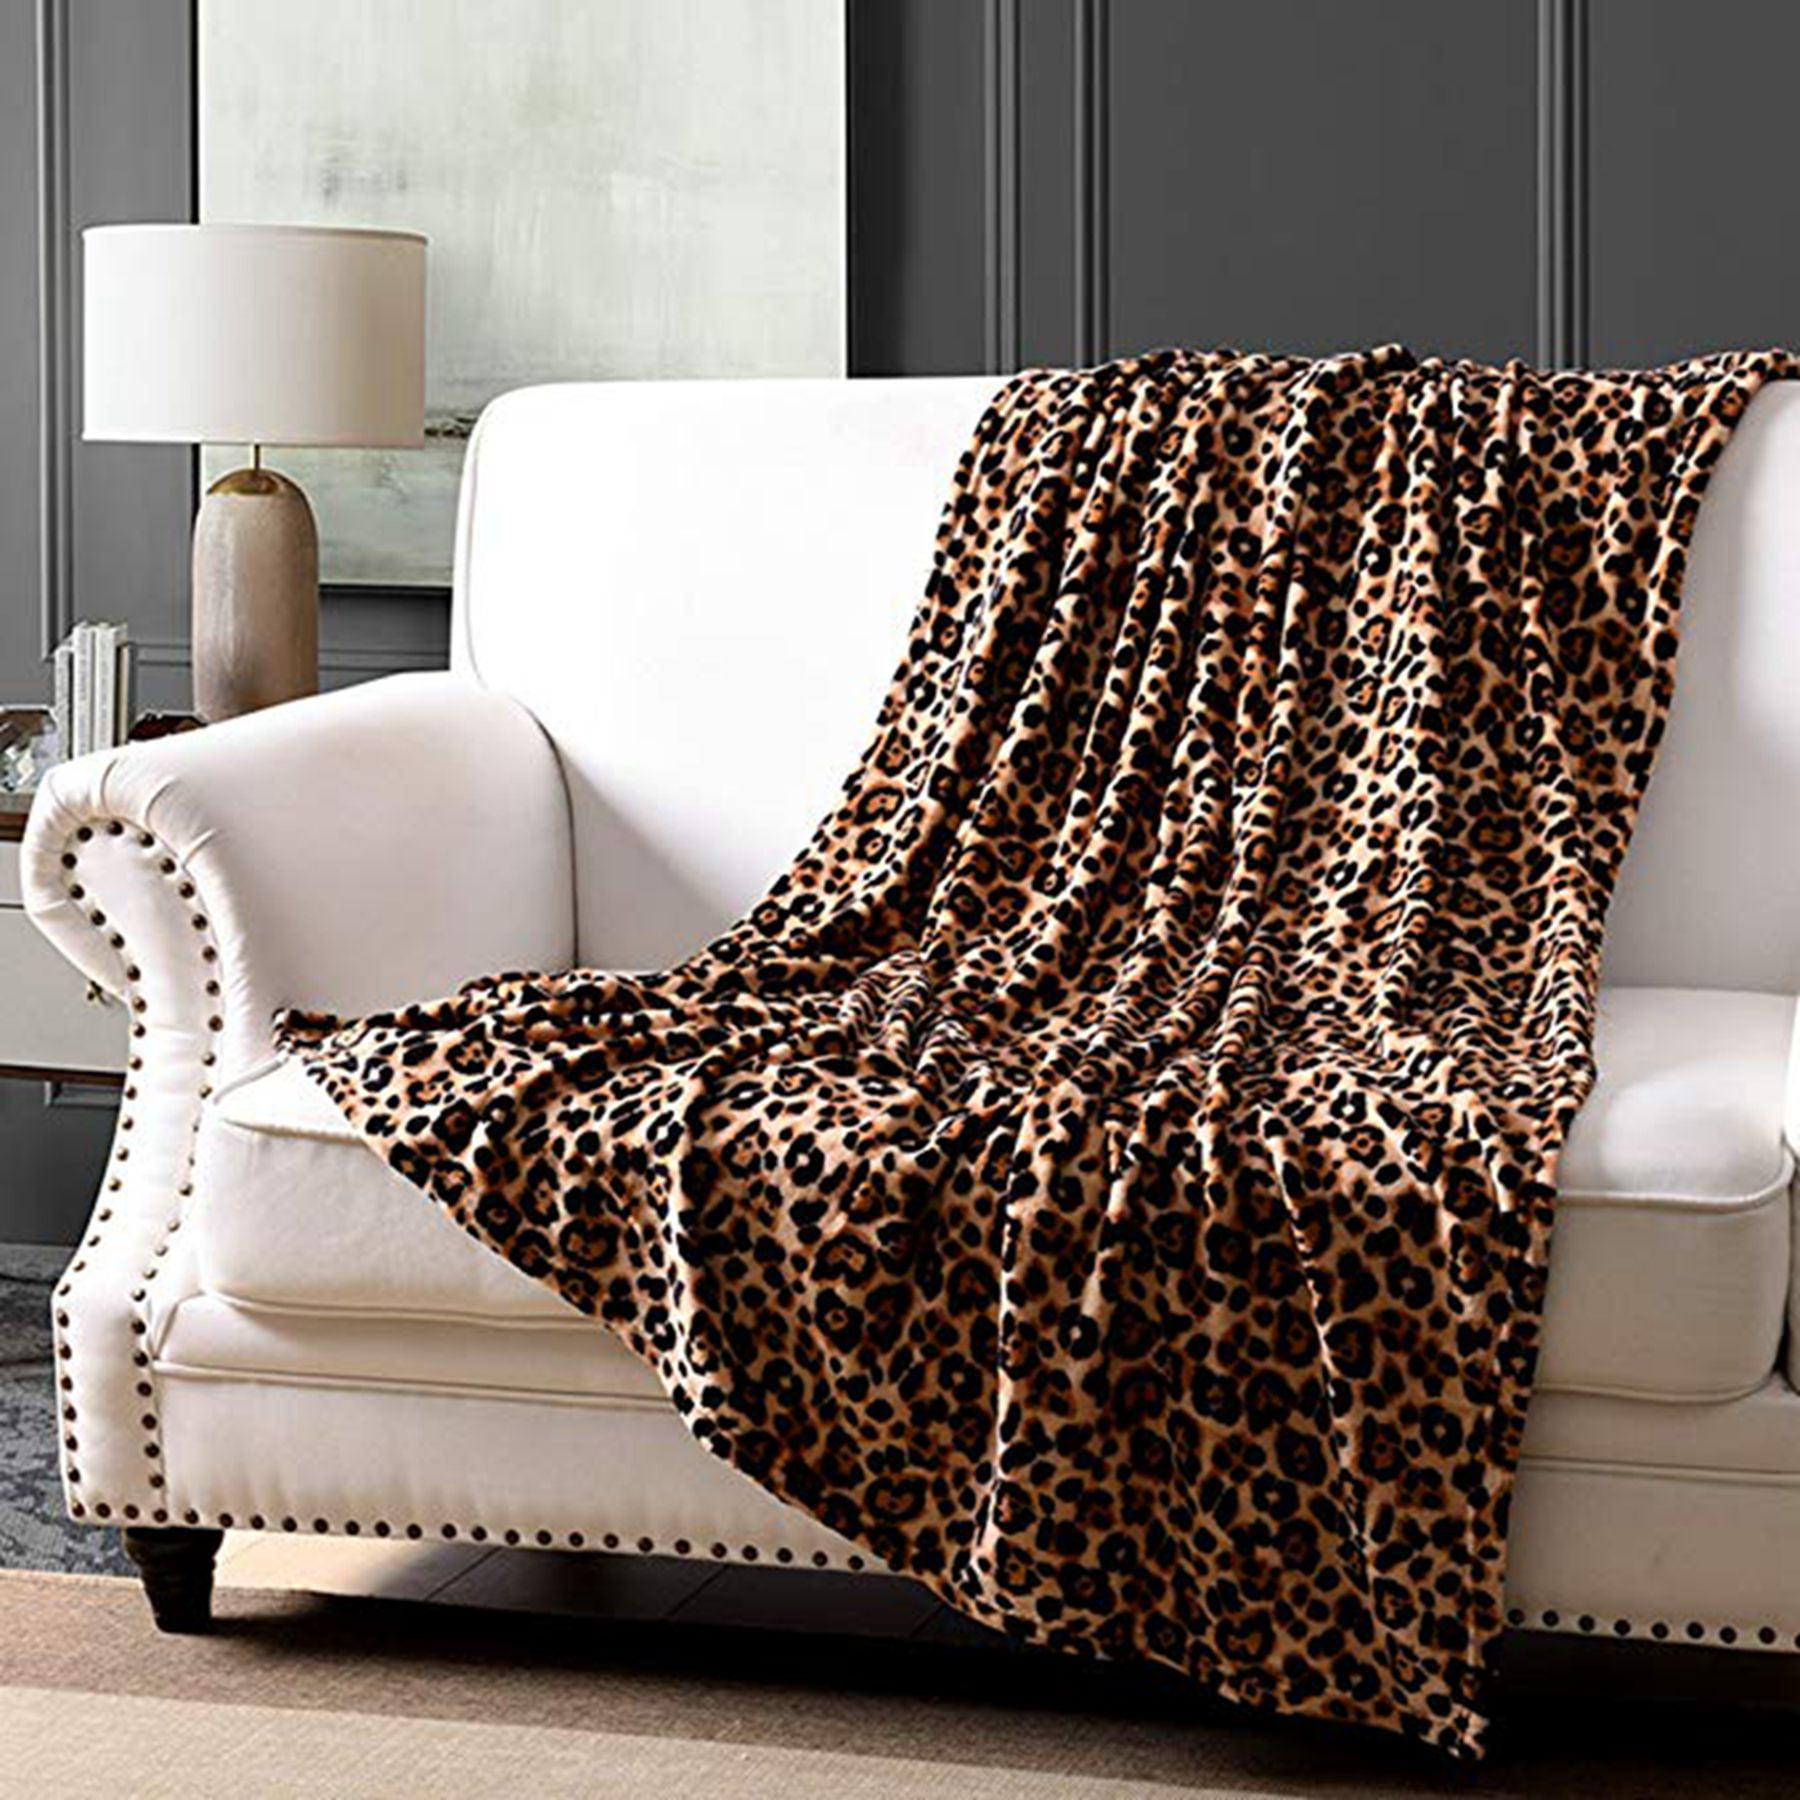 Throw Pom Pom New Luxury Design Warm Lush Fleece Cozy Blanket Sofa Throw 